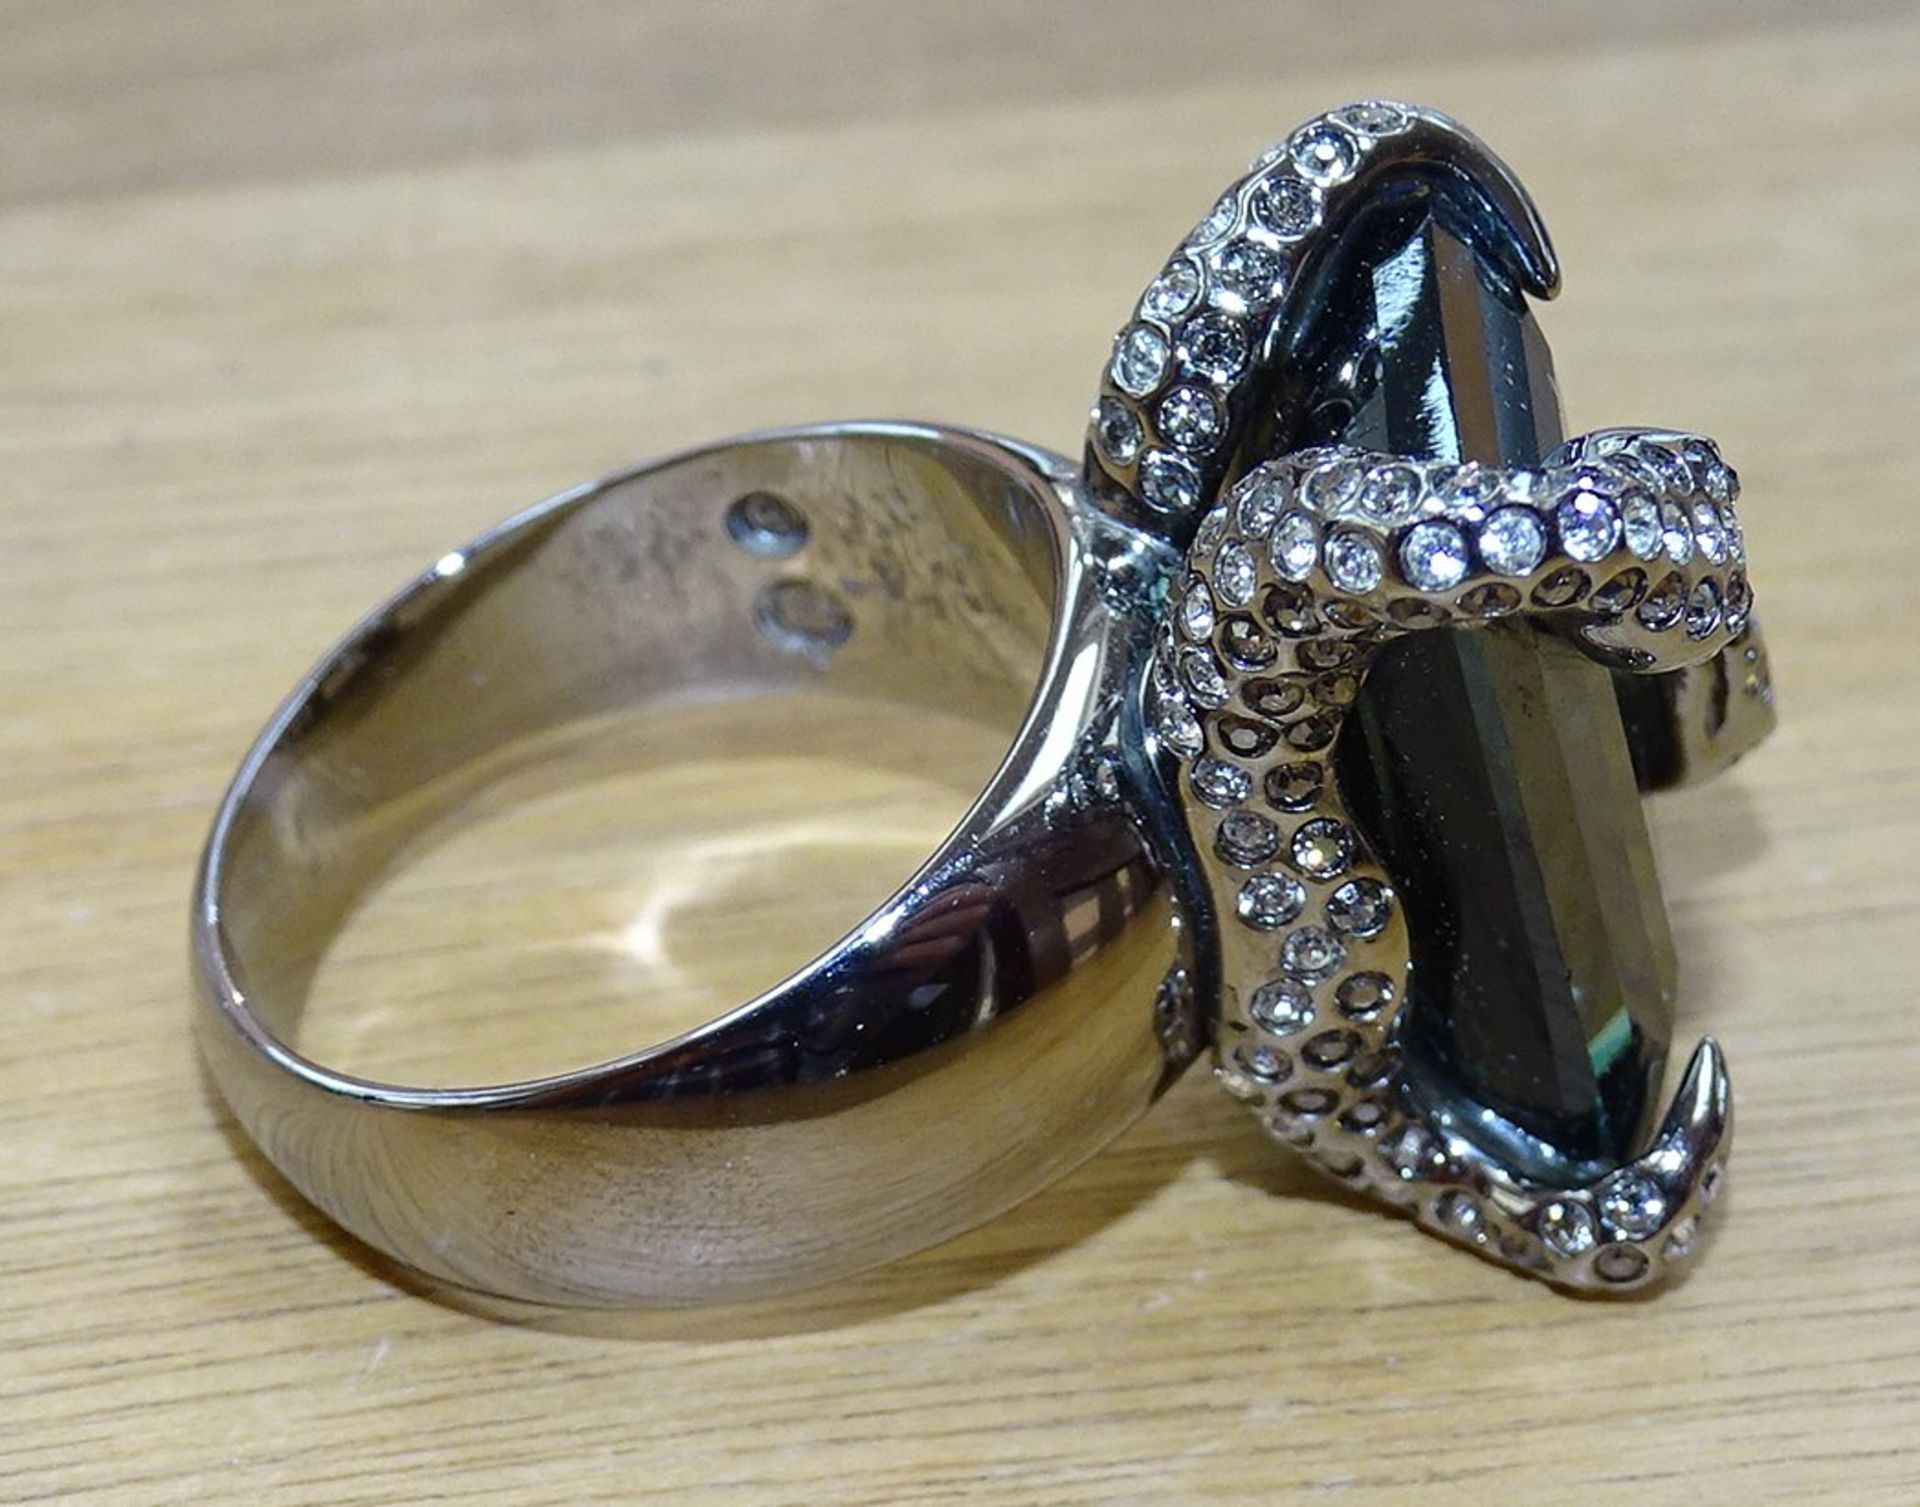 gr. Ring mit grünen Stein, zwei Schlangen, versilbert, RG 59, 14,4 gr - Bild 4 aus 4